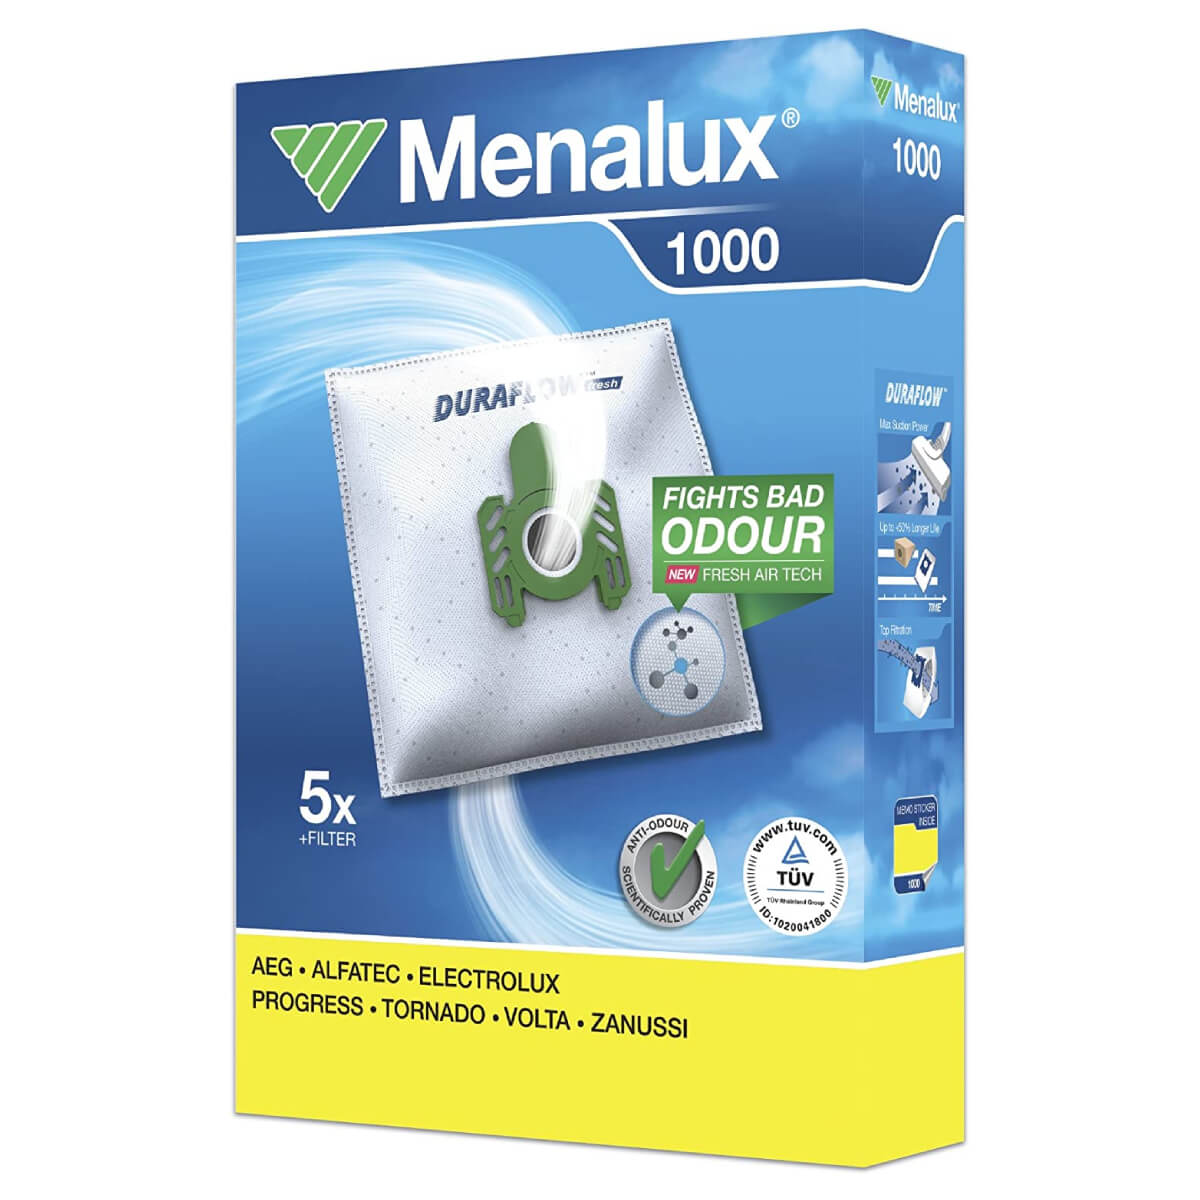 Мешки для пылесоса Menalux 1000 5 шт + фильтр